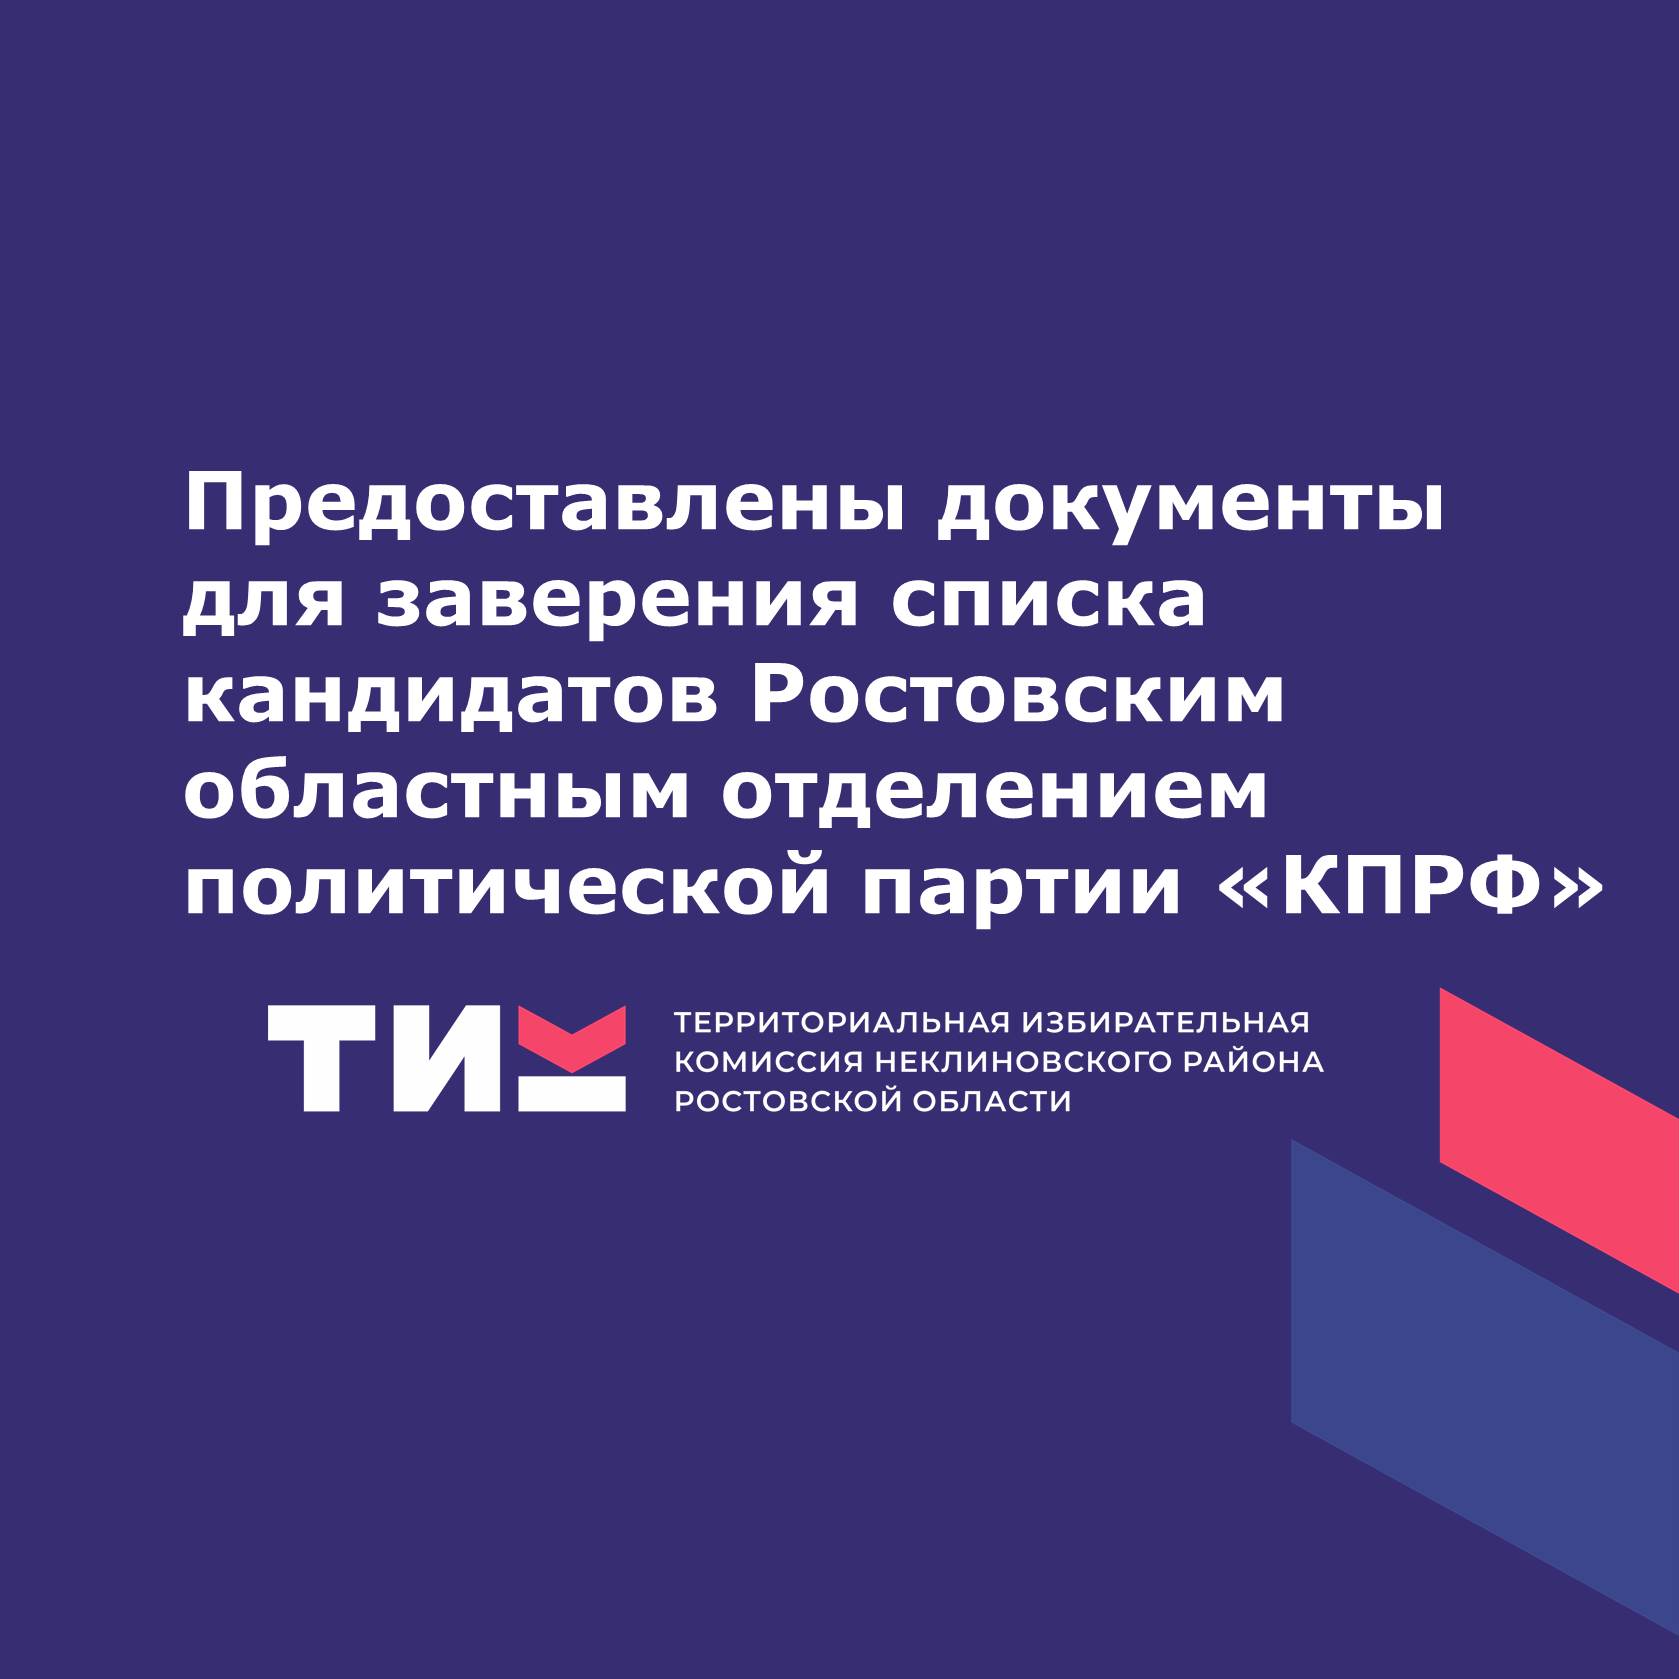 Предоставлены документы для заверения списка кандидатов Ростовским областным отделением политической партии «КПРФ»